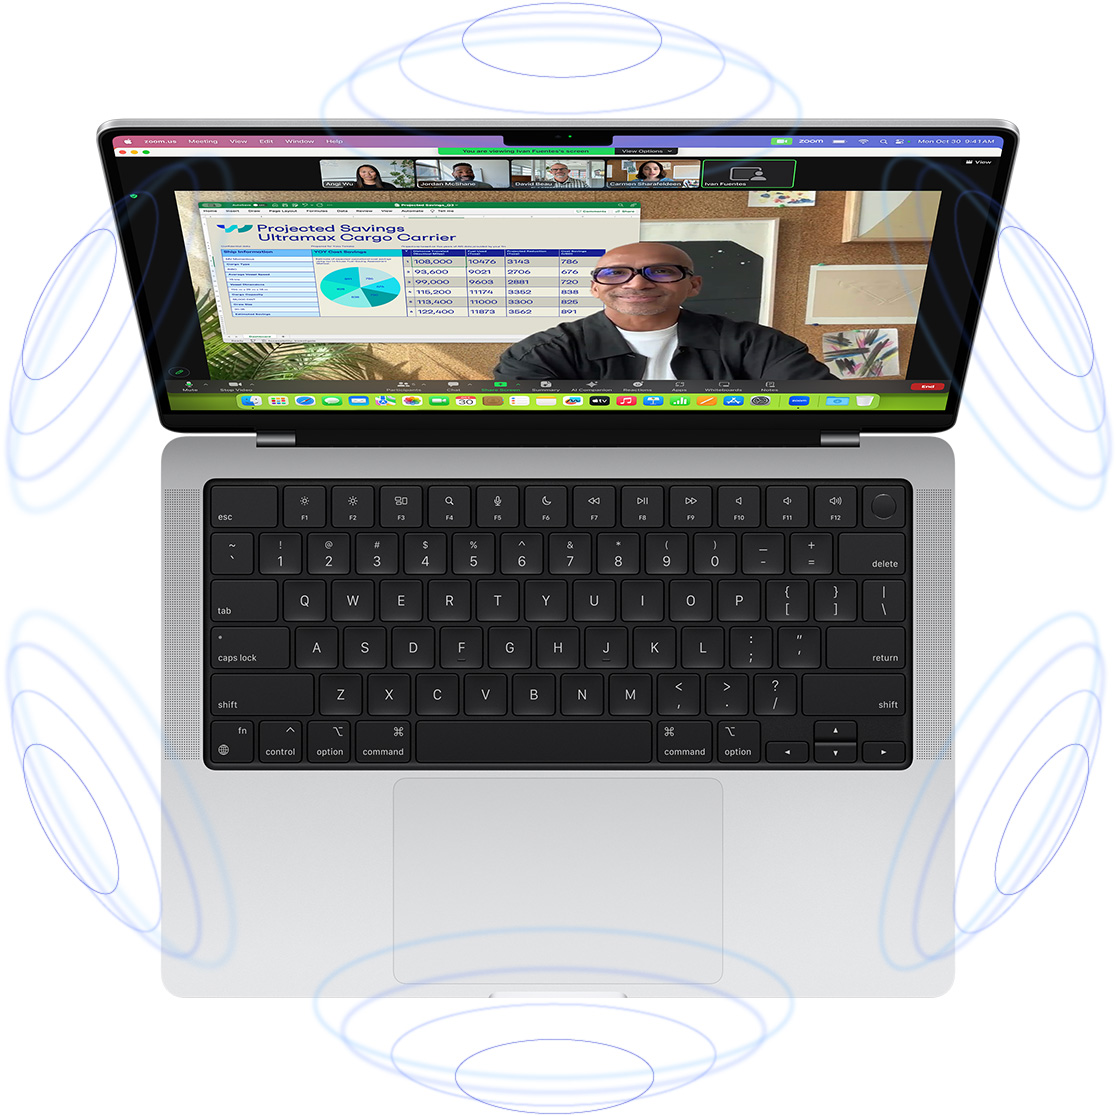 Một cuộc gọi FaceTime trên MacBook Pro, được bao quanh bởi các hình minh họa dạng vòng tròn màu xanh dương để thể hiện trải nghiệm 3D của Âm Thanh Không Gian